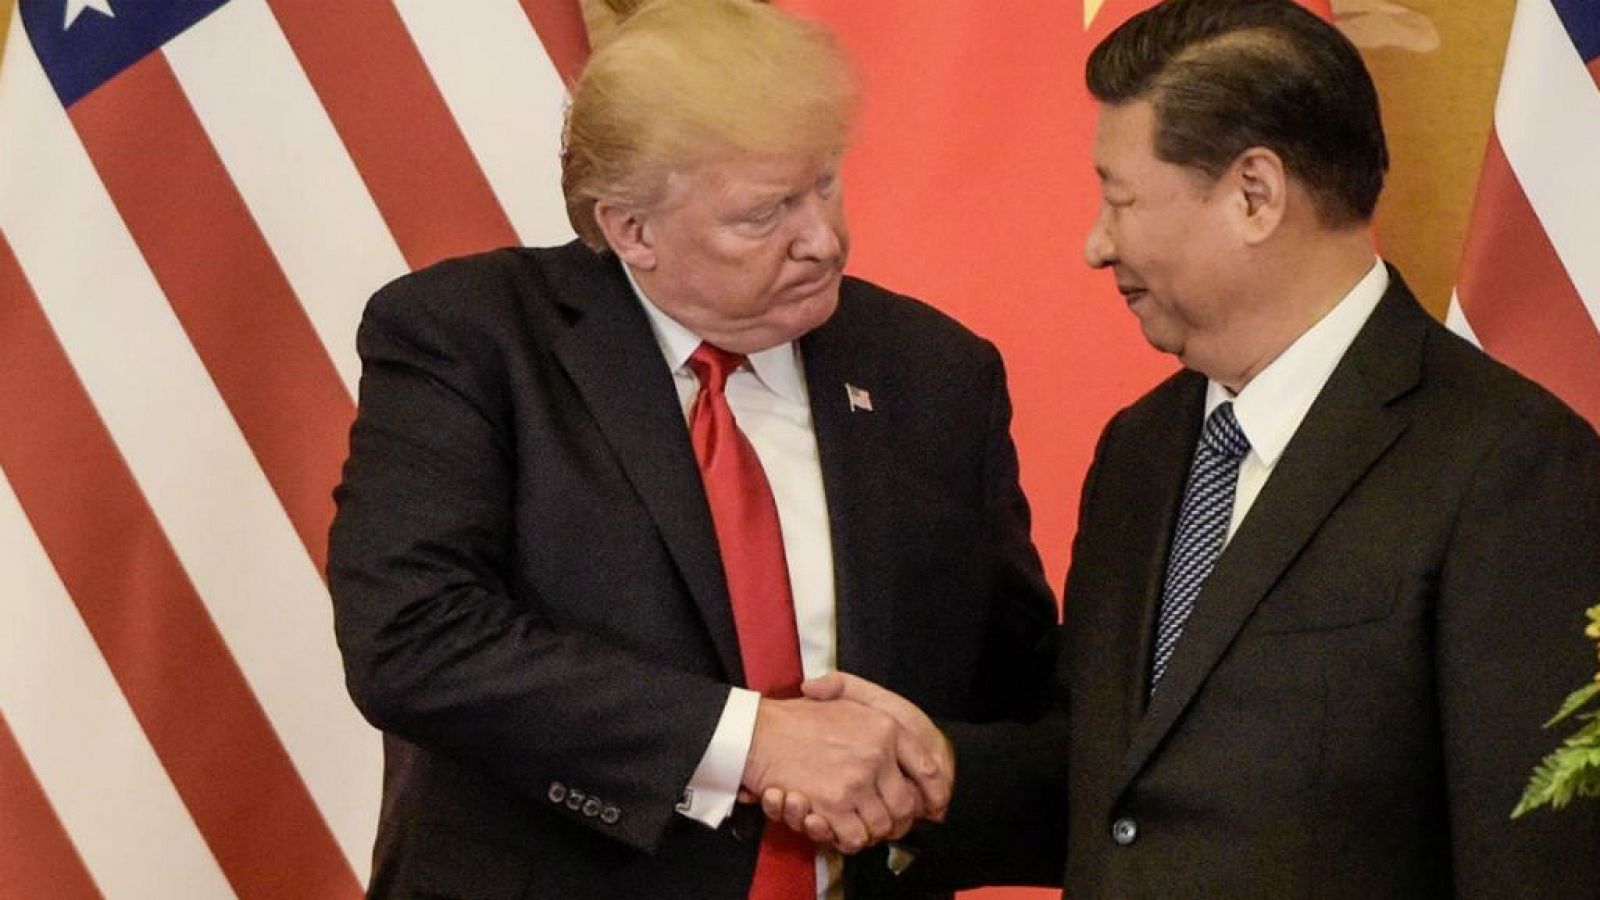 La guerra comercial entre EE.UU y China - Escuchar ahora